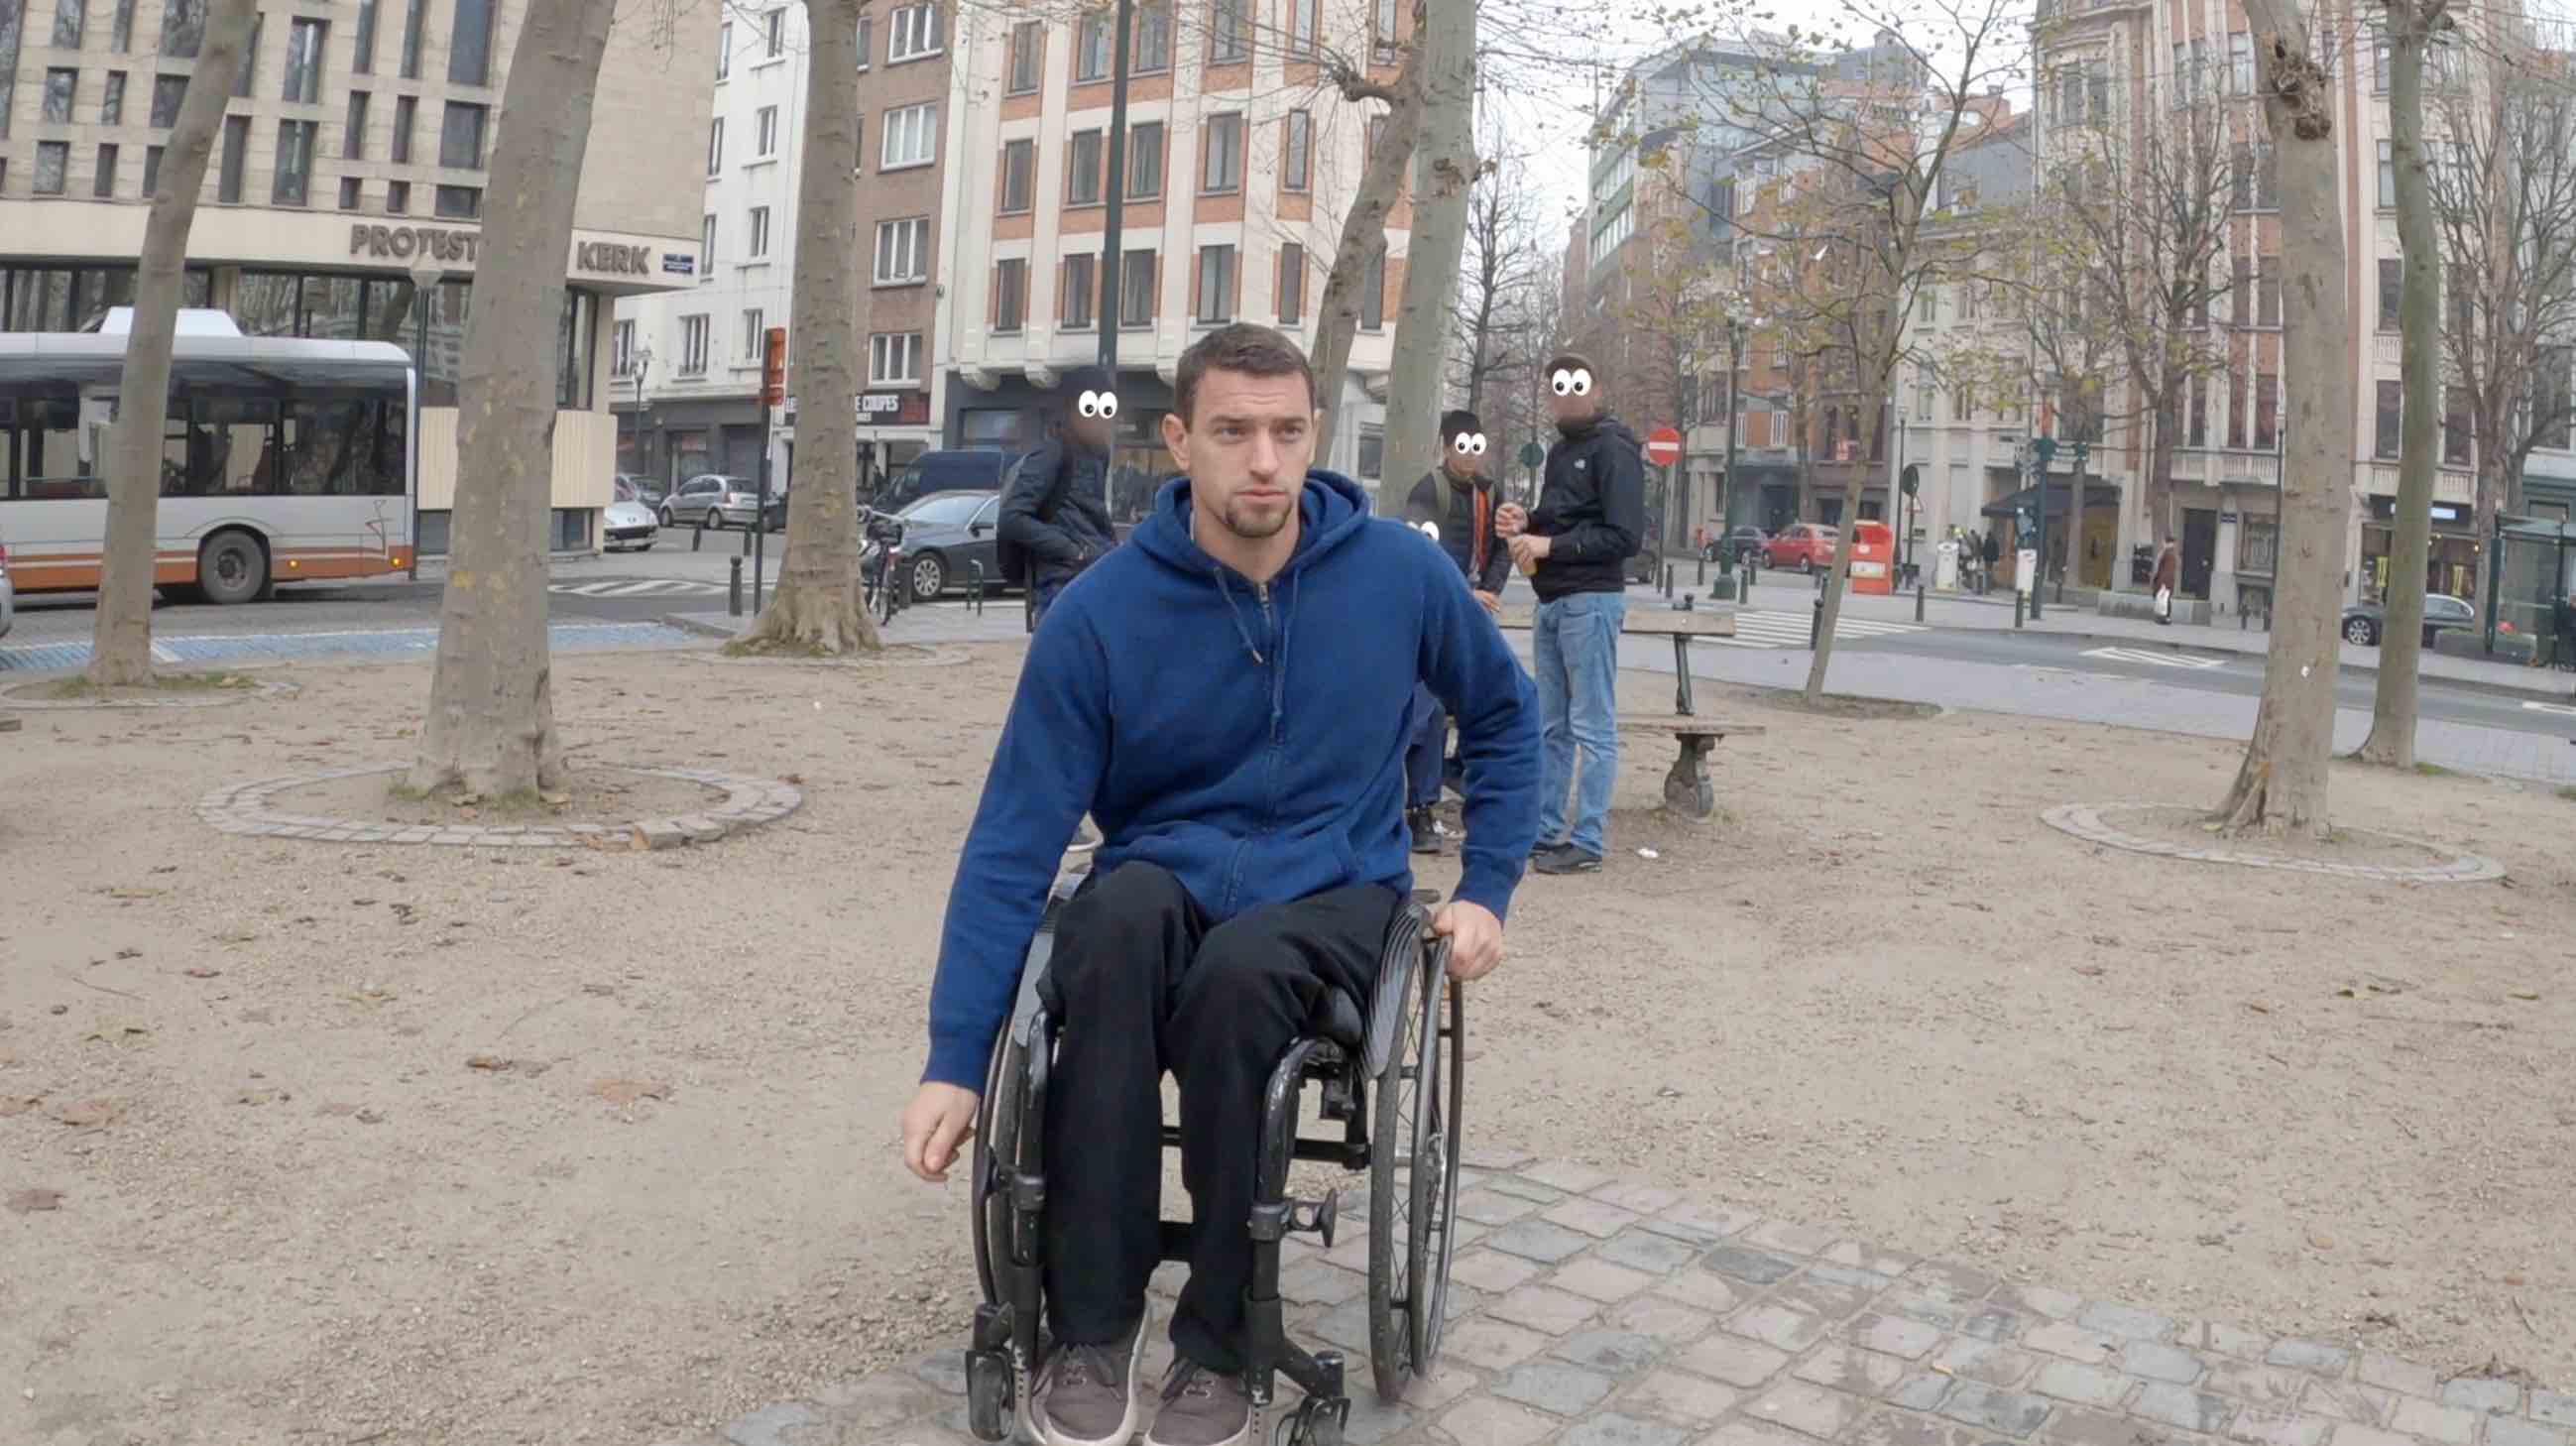 Mutant a l'oeil pour Paralympic Team Belgium